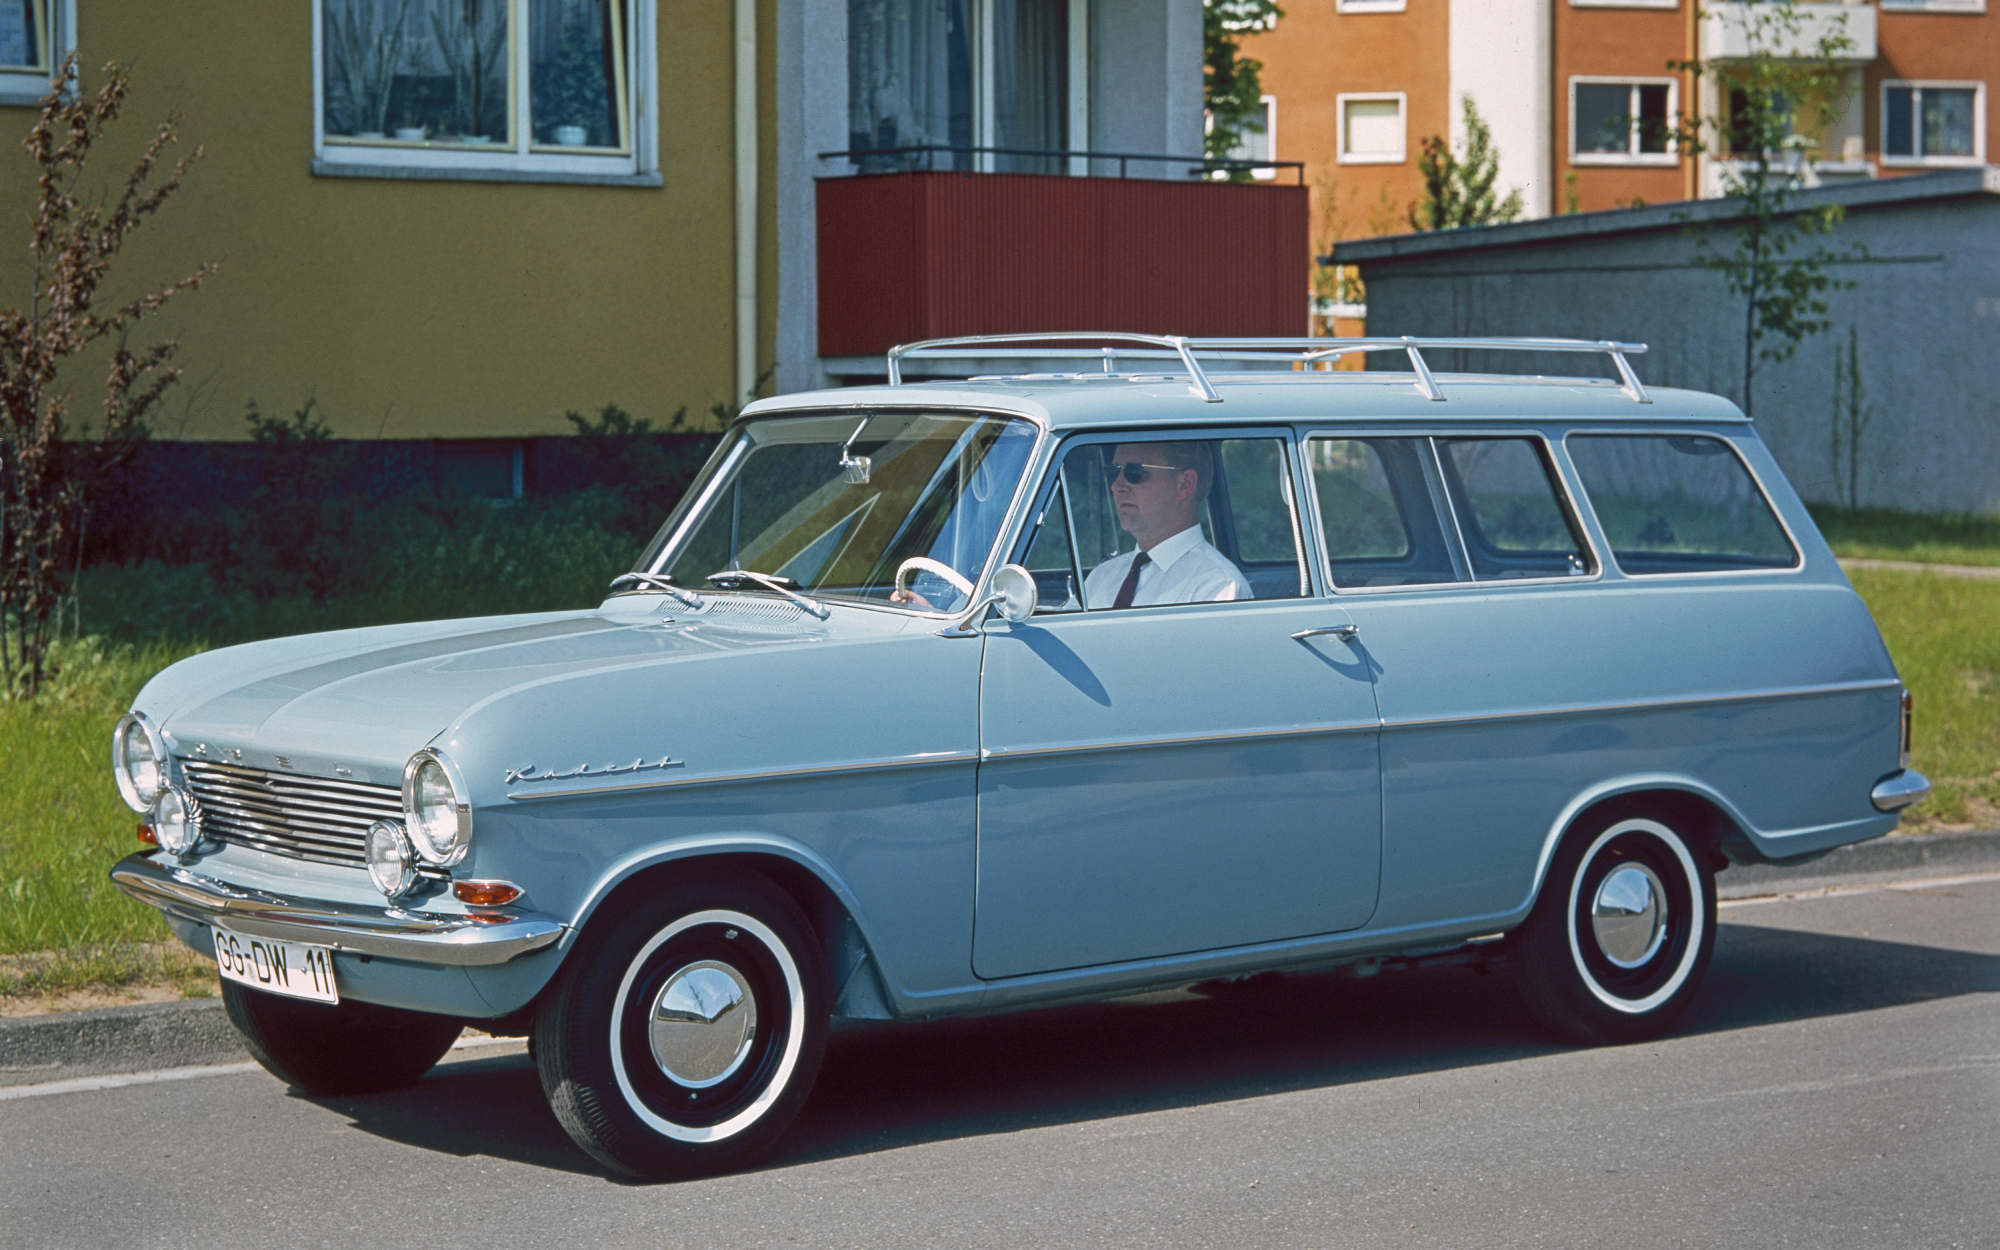 De historie van de Opel-stationwagens – Deel 7 - Opel Nederland